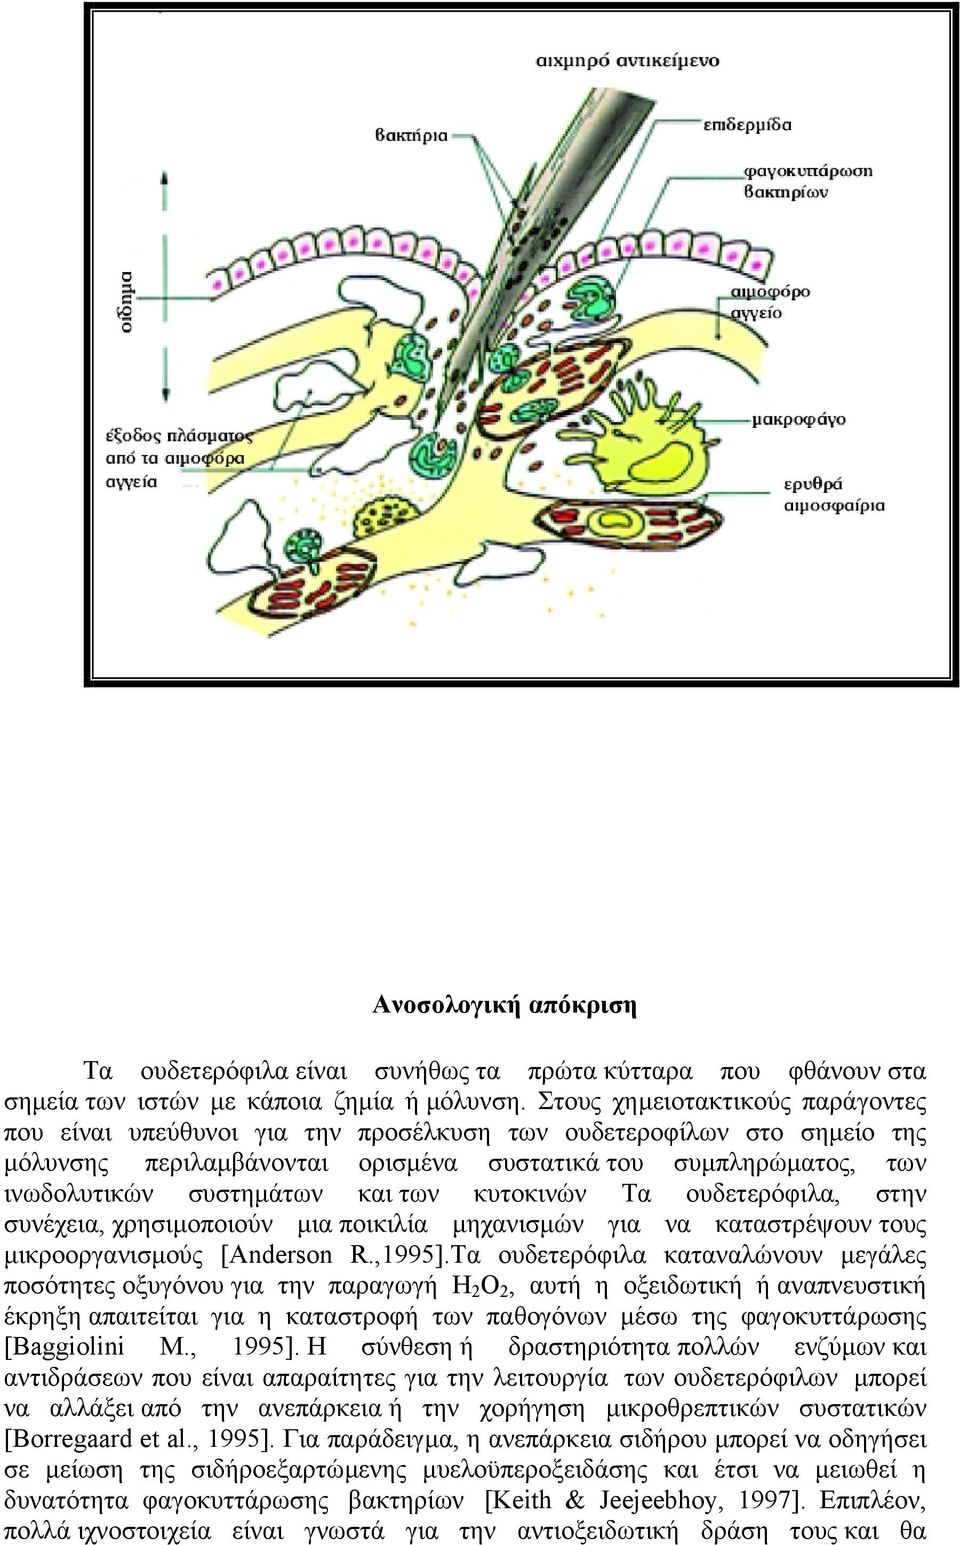 των κυτοκινών Τα ουδετερόφιλα, στην συνέχεια, χρησιµοποιούν µια ποικιλία µηχανισµών για να καταστρέψουν τους µικροοργανισµούς [Anderson R.,1995].